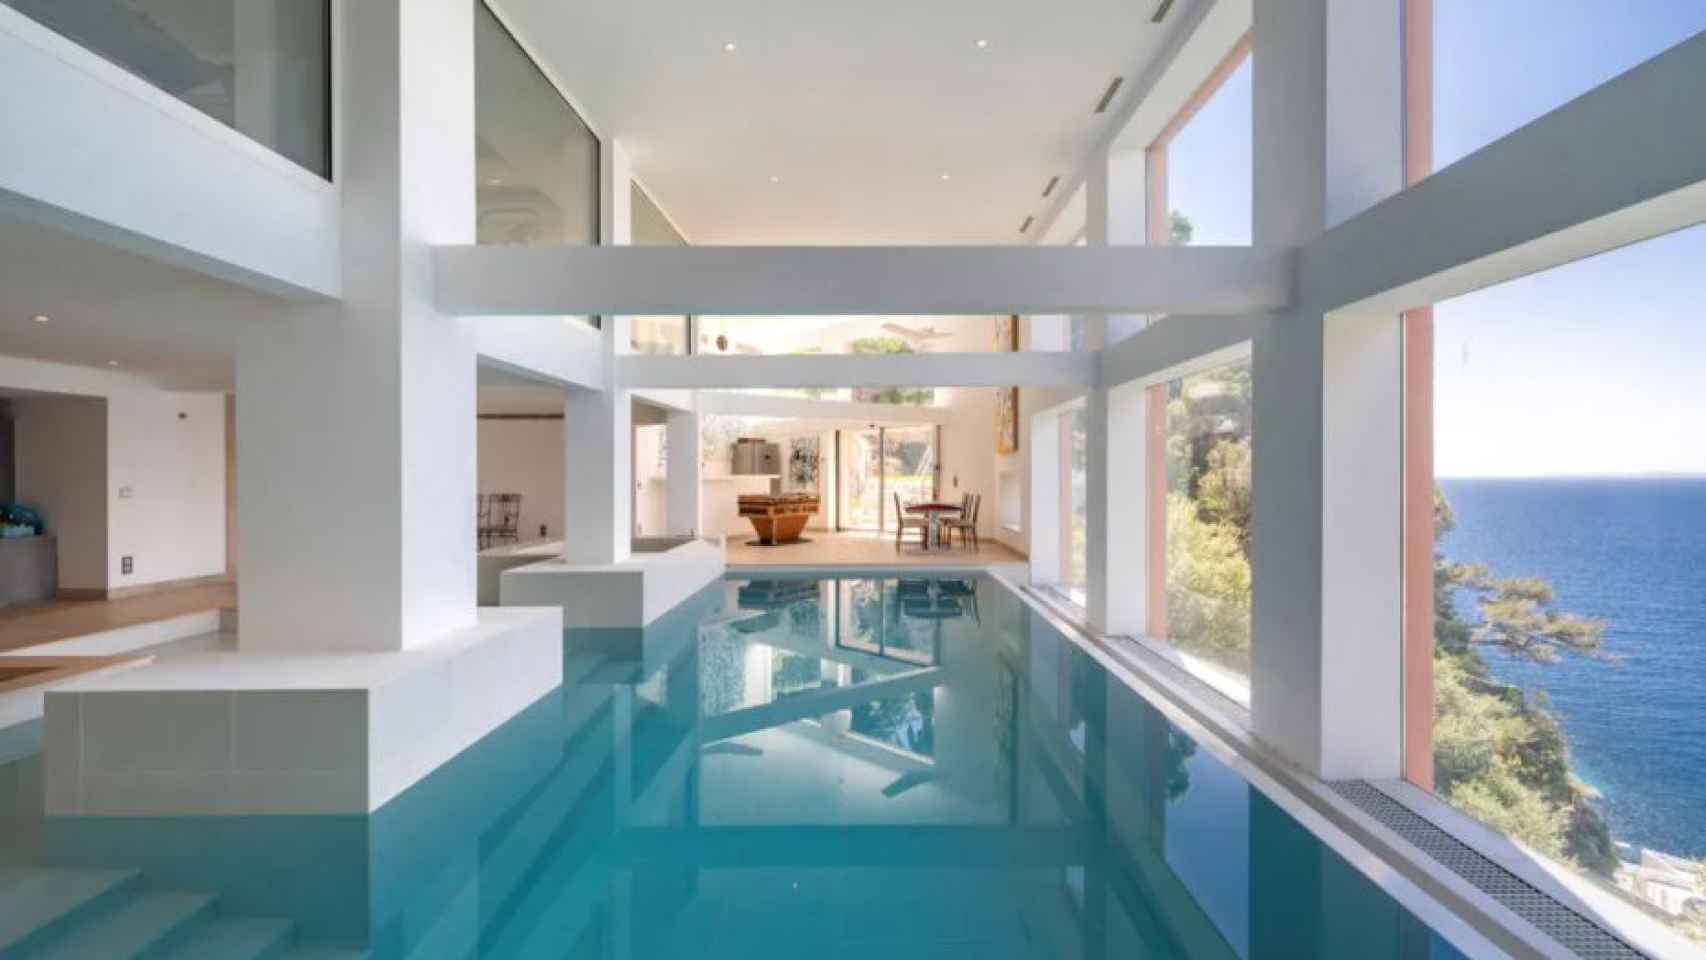 La propiedad cuenta con una piscina cubierta.